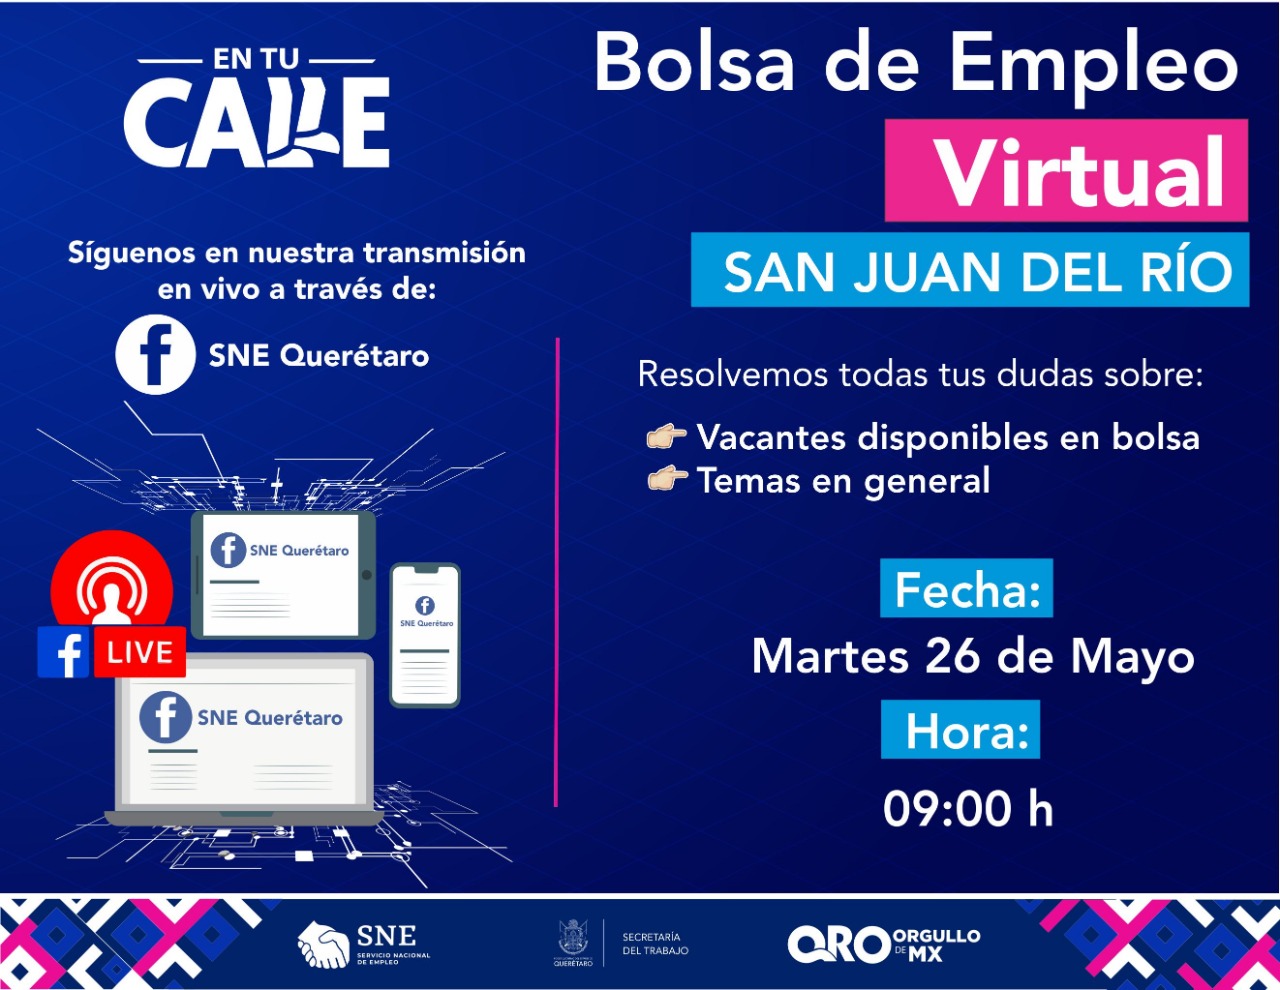 Realizarán bolsa de empleo virtual en tiempo real para San Juan del Río; ofertarán 150 plazas.